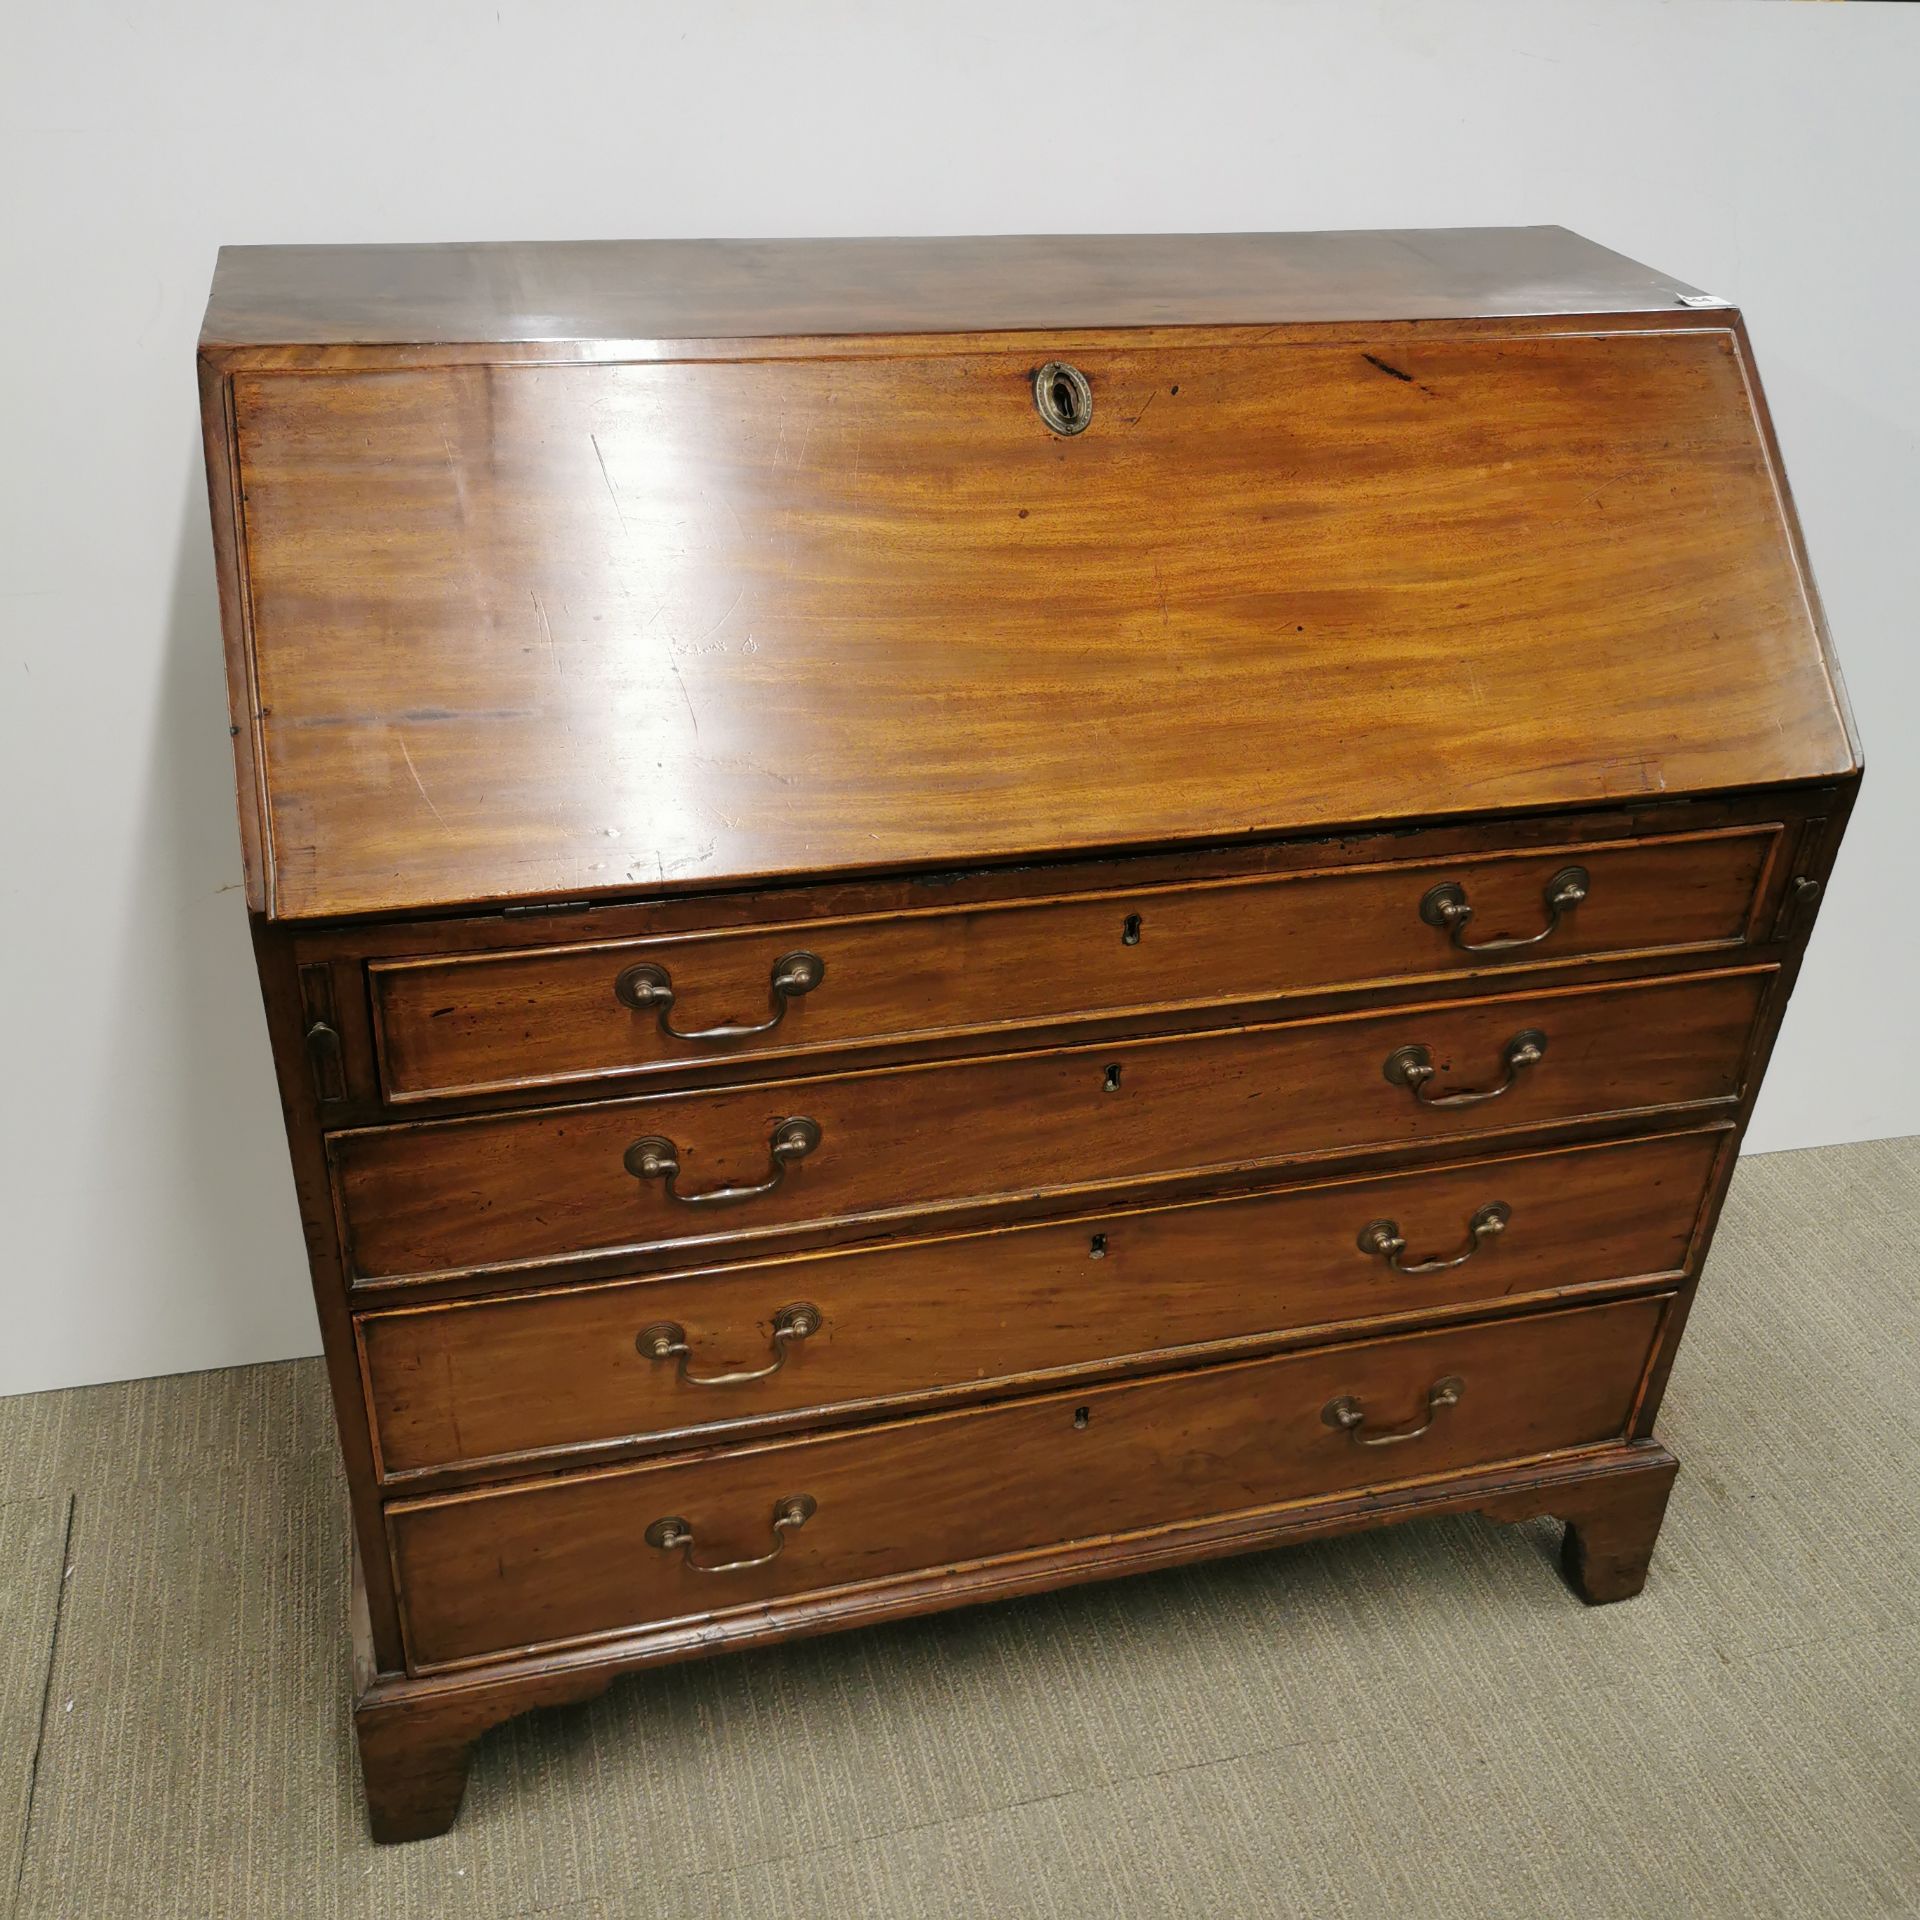 A Georgian four drawer mahogany bureau, size 106 x 54 x 107cm.